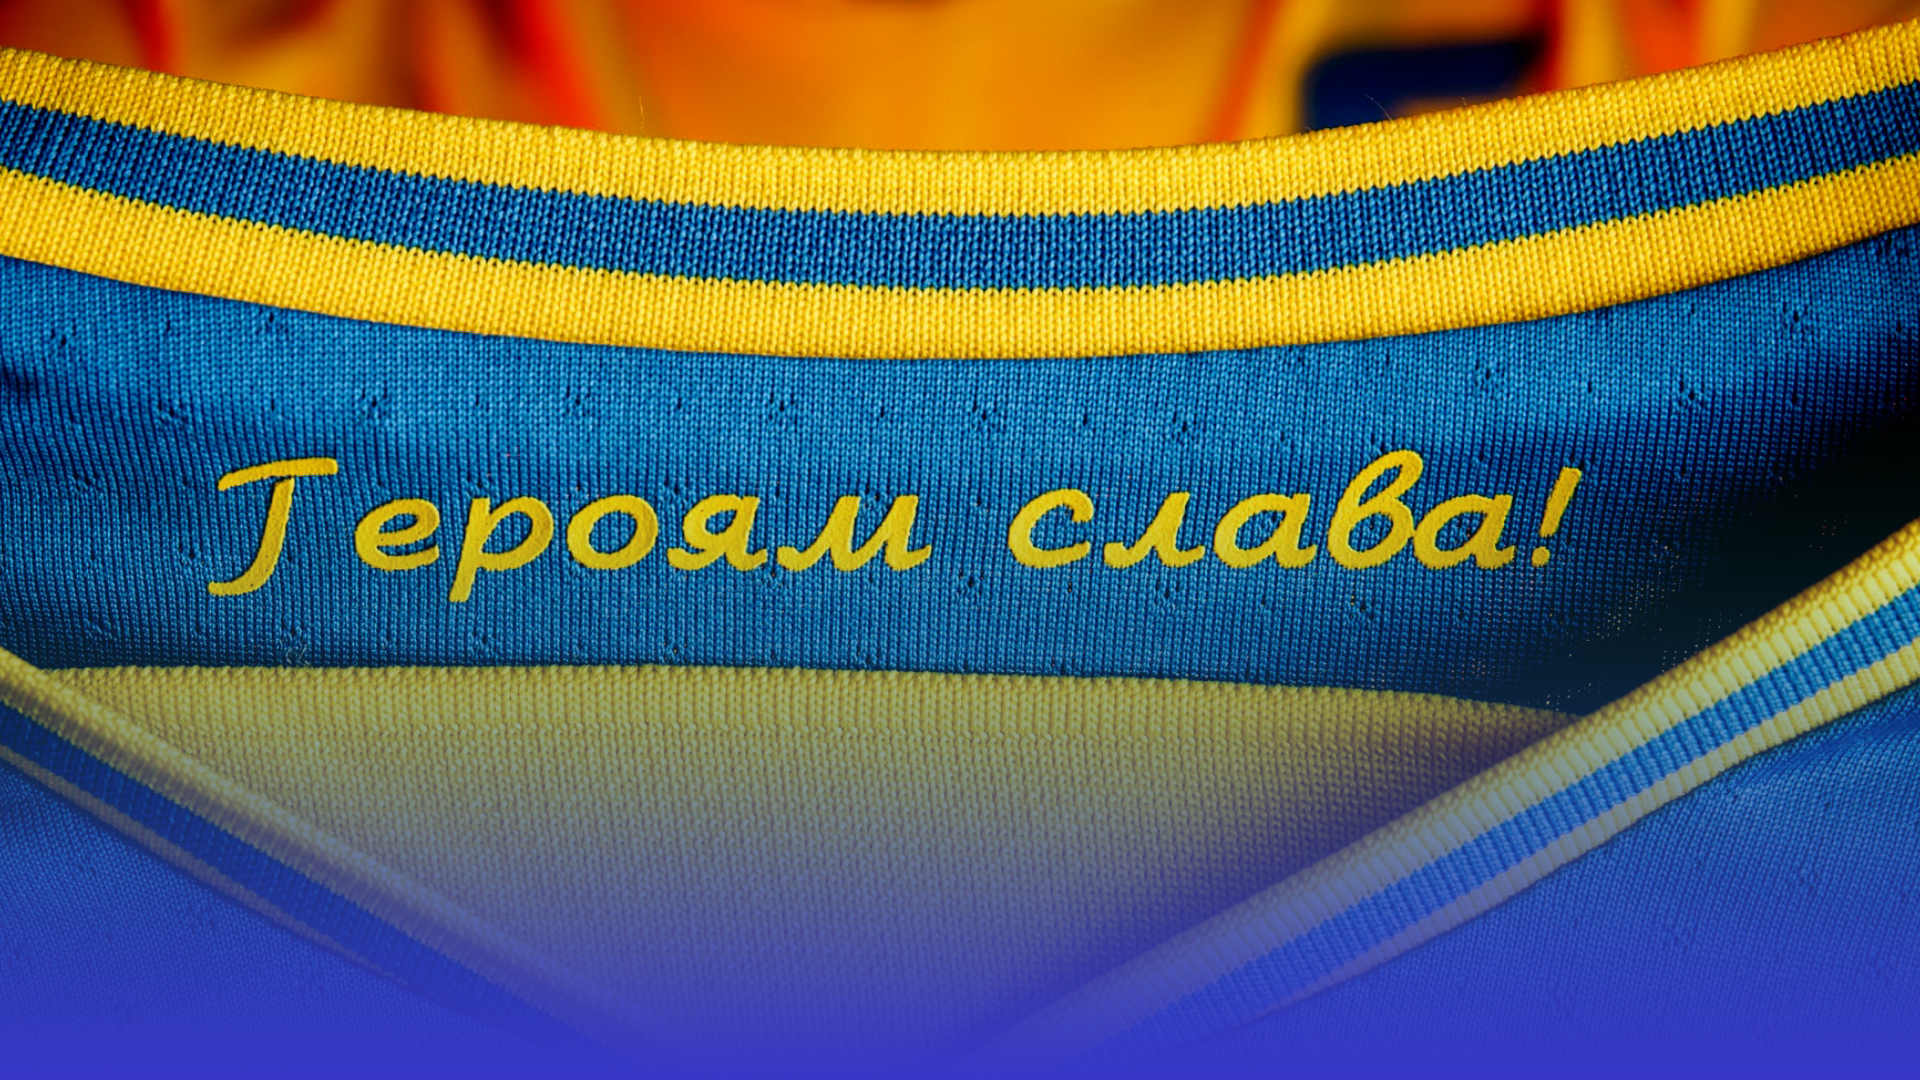 “Слава Україні!” і “Героям слава!” офіційні футбольні гасла України